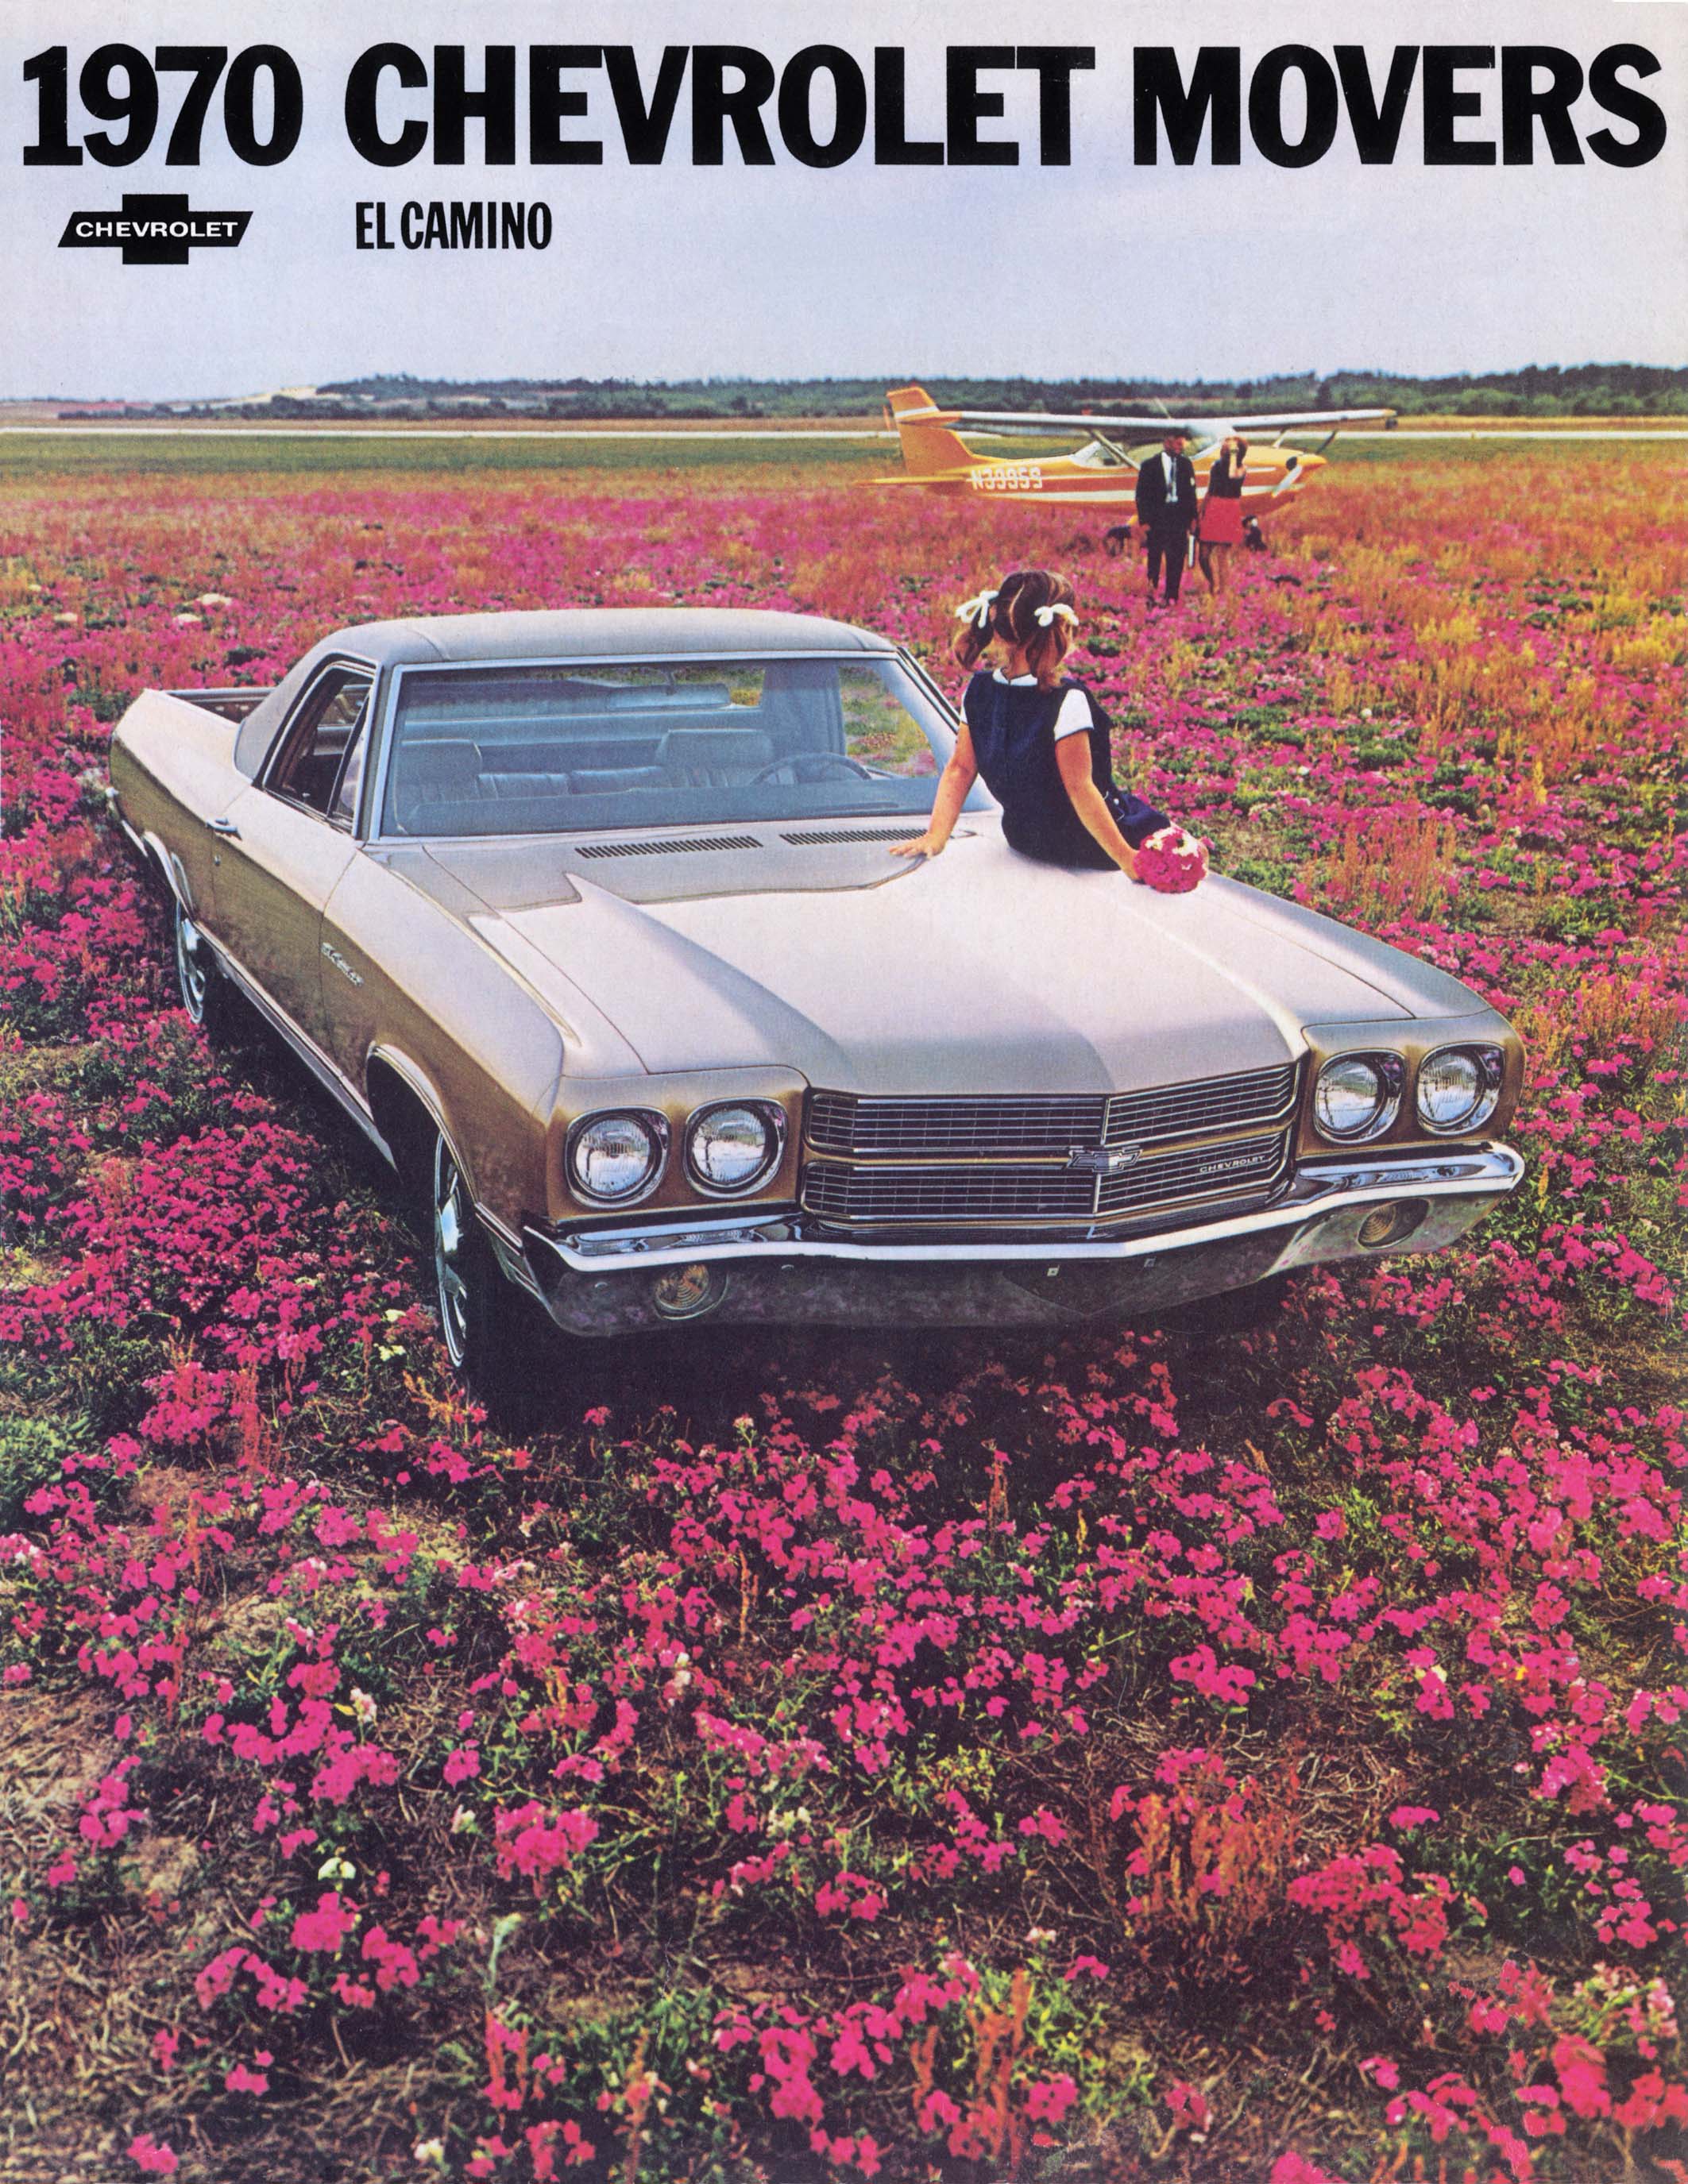 1970_Chevrolet_El_Camino_Rev1-01